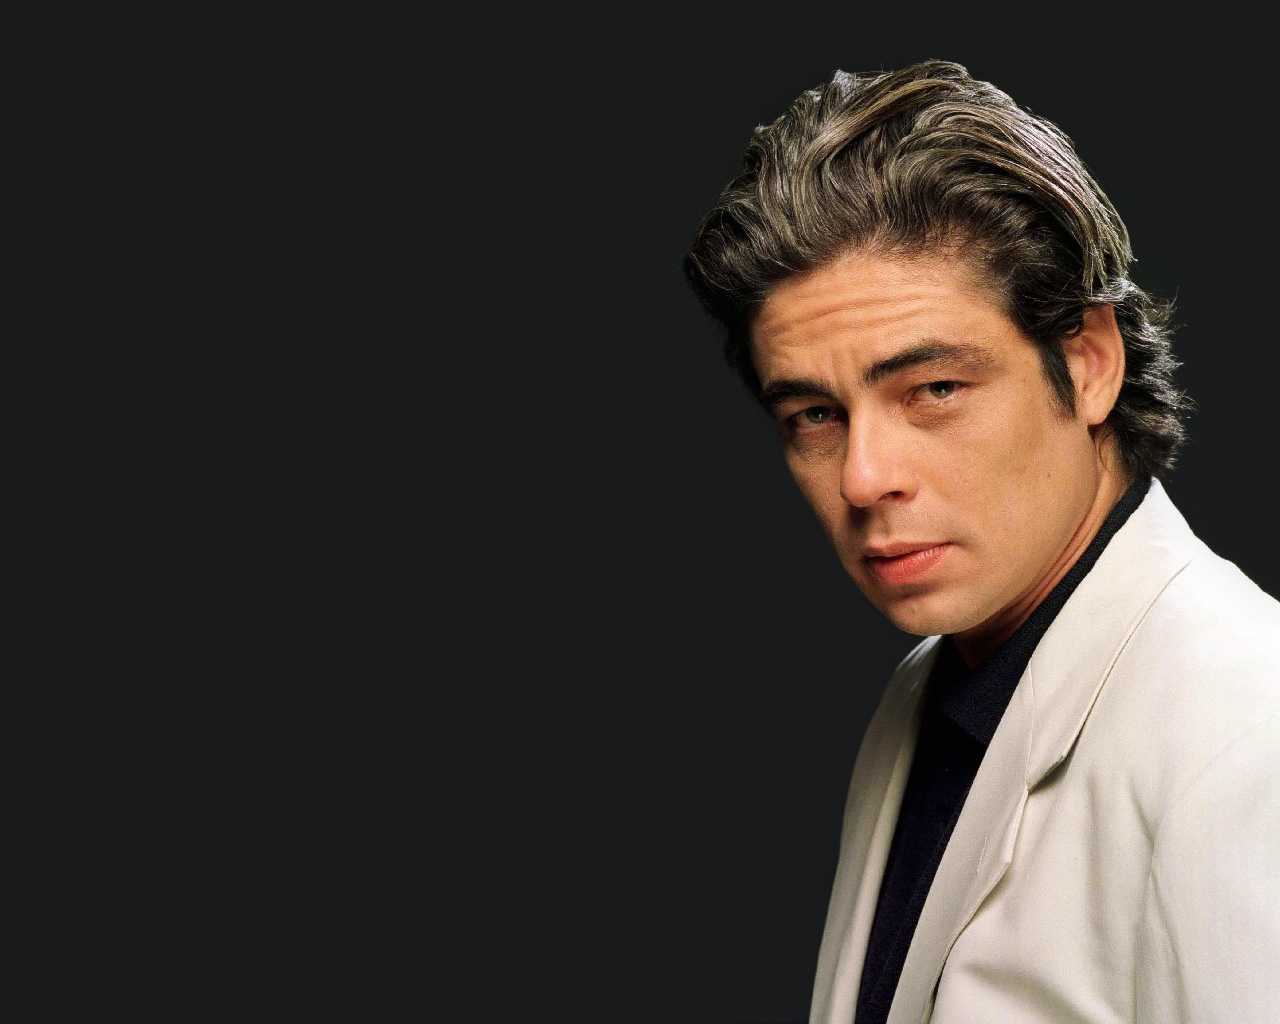 Benicio del Toro revela que tiene “pasión por Cuba” desde niño